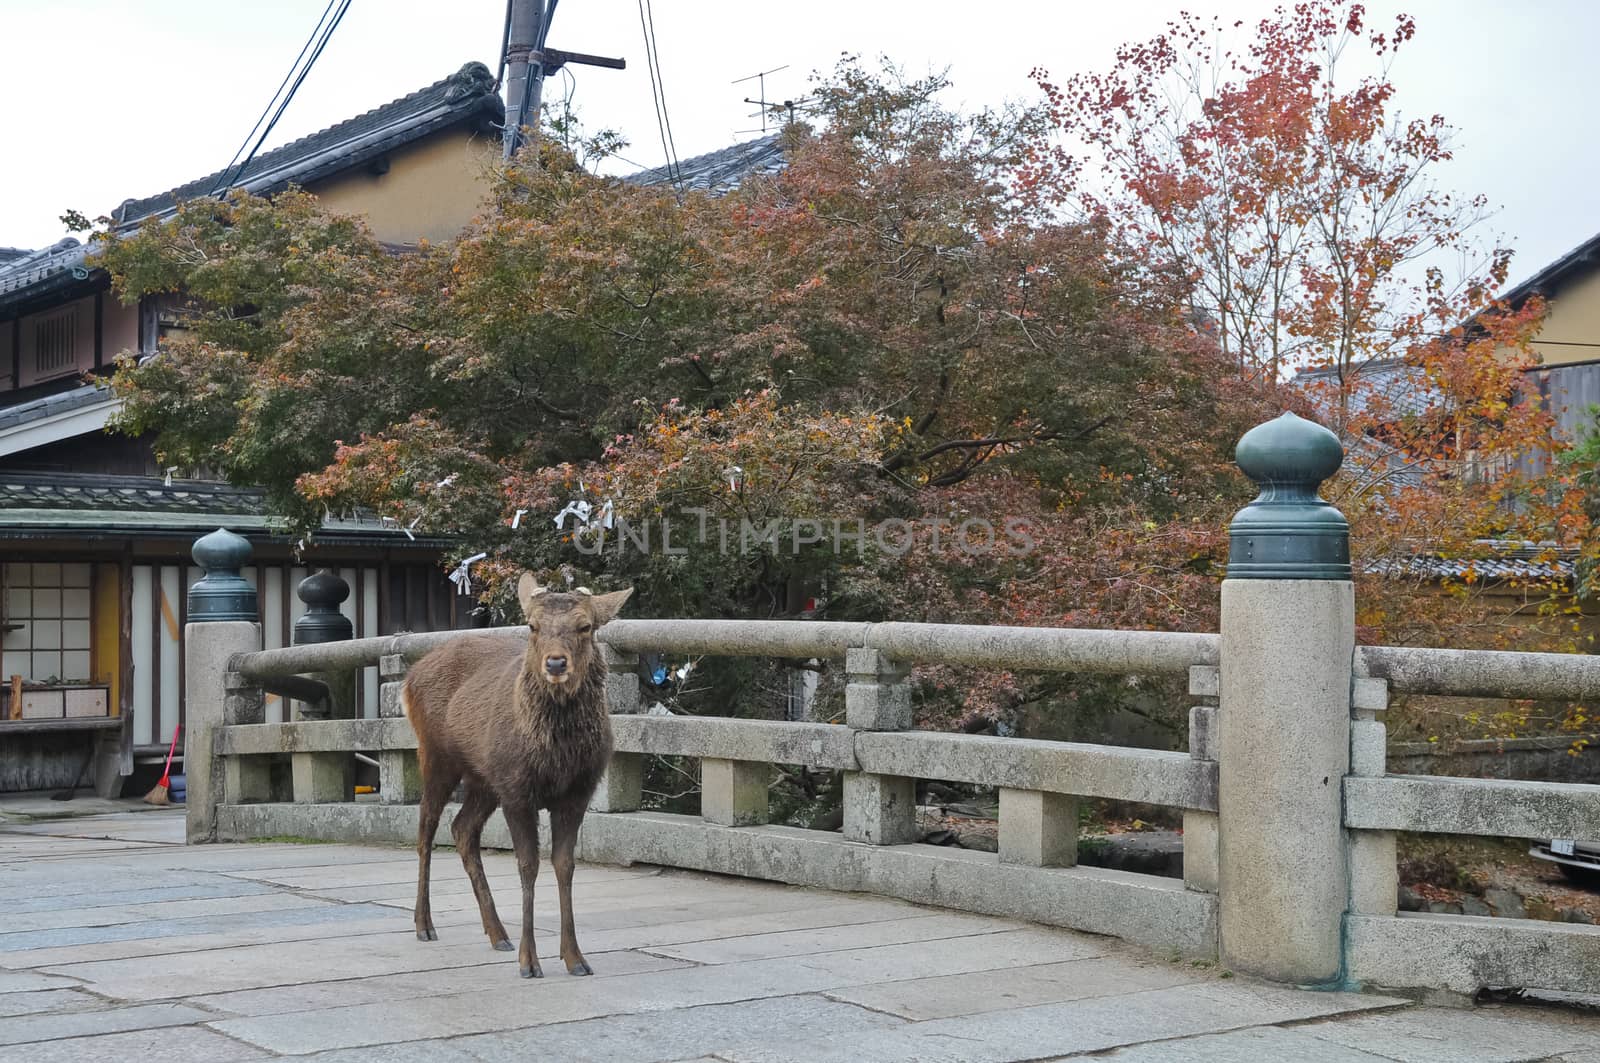 Japanese brown deer on an ancient stone bridge in Nara Japan